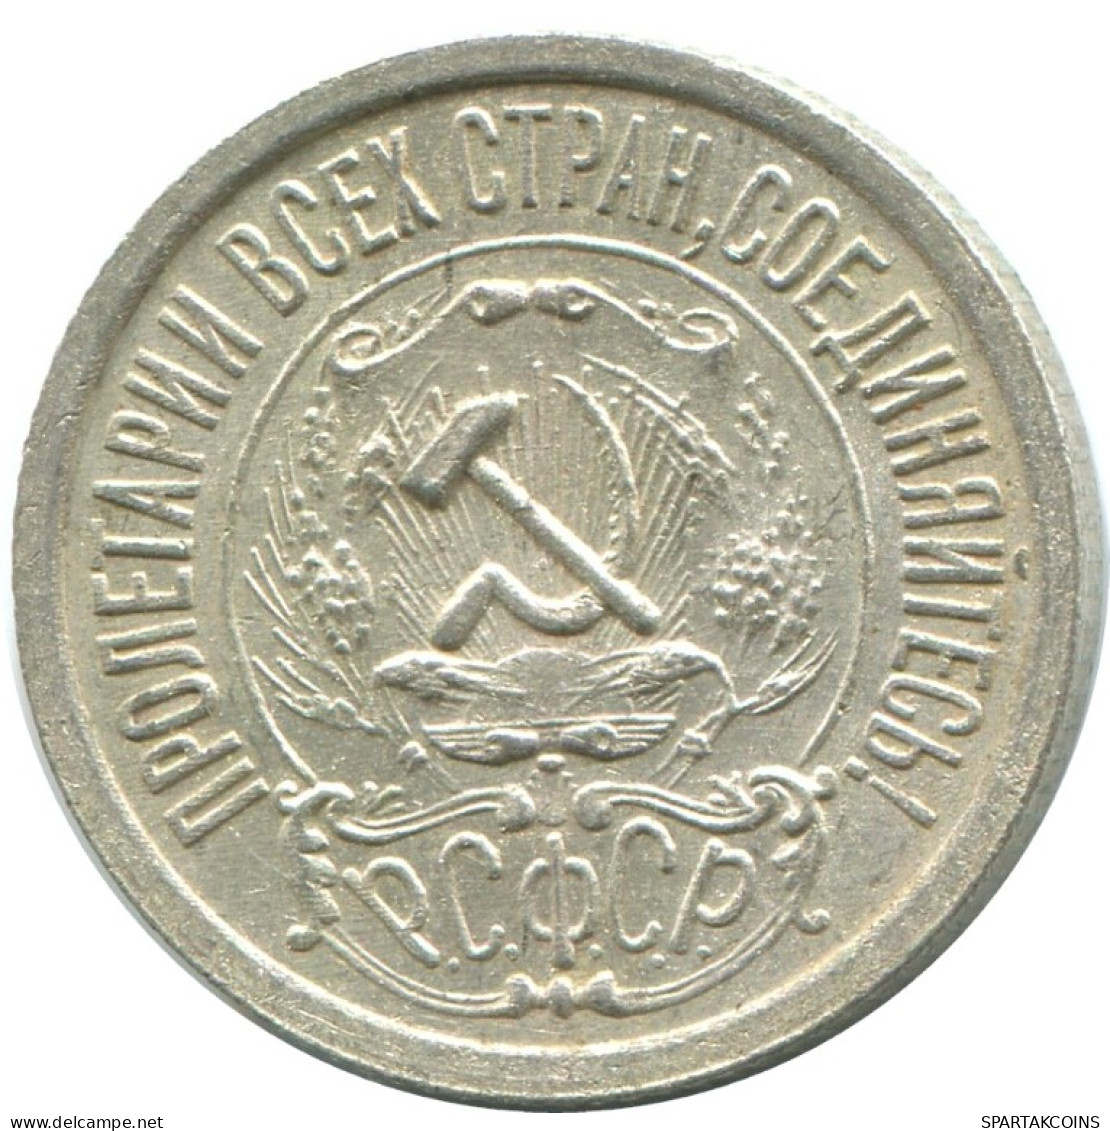 15 KOPEKS 1922 RUSSIA RSFSR SILVER Coin HIGH GRADE #AF236.4.U.A - Russland